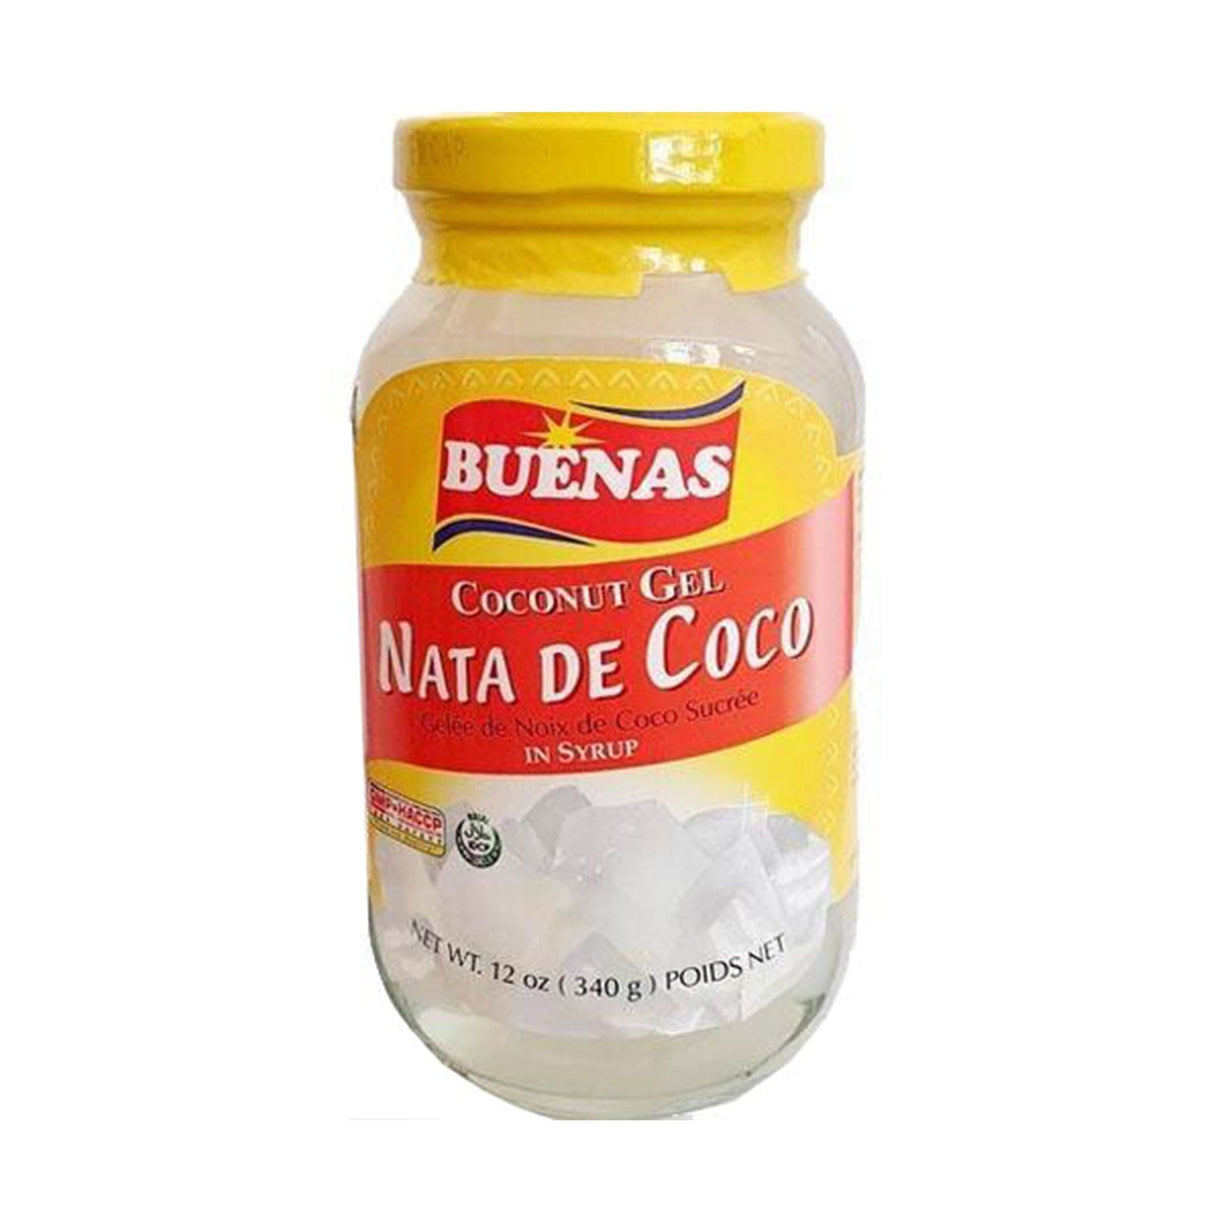 Buenas Coconut Gel Nata De Coco in Syrup